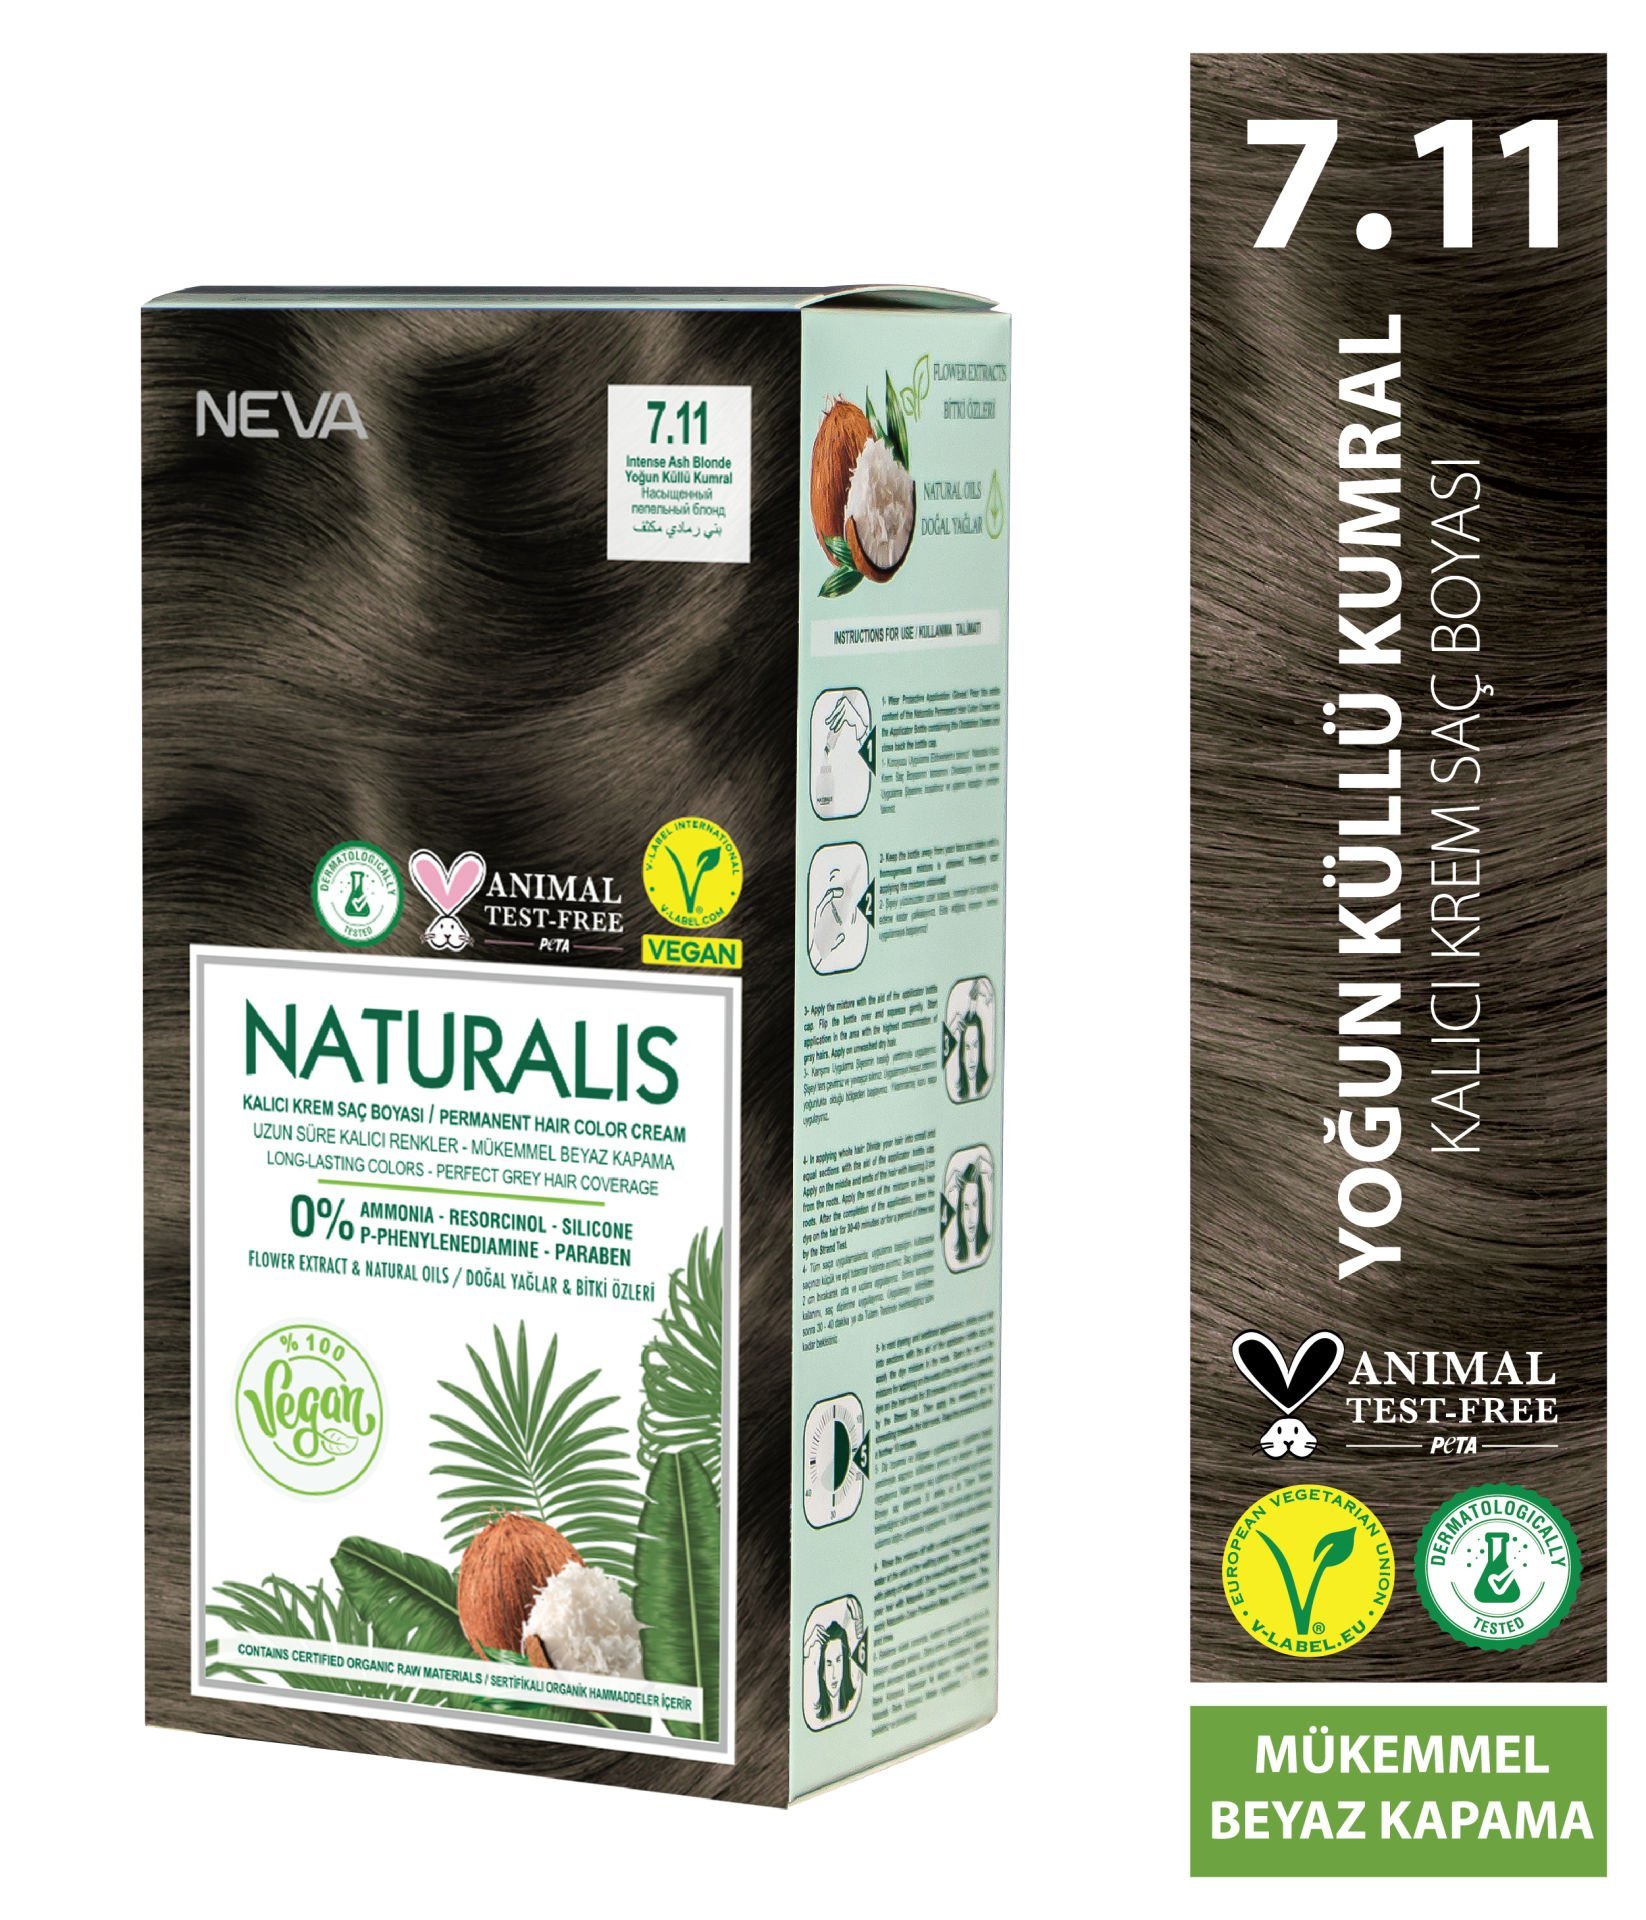 Nevacolor Naturalis Vegan Yoğun Küllü Kumral 7.11 Kalıcı Krem Saç Boyası Seti